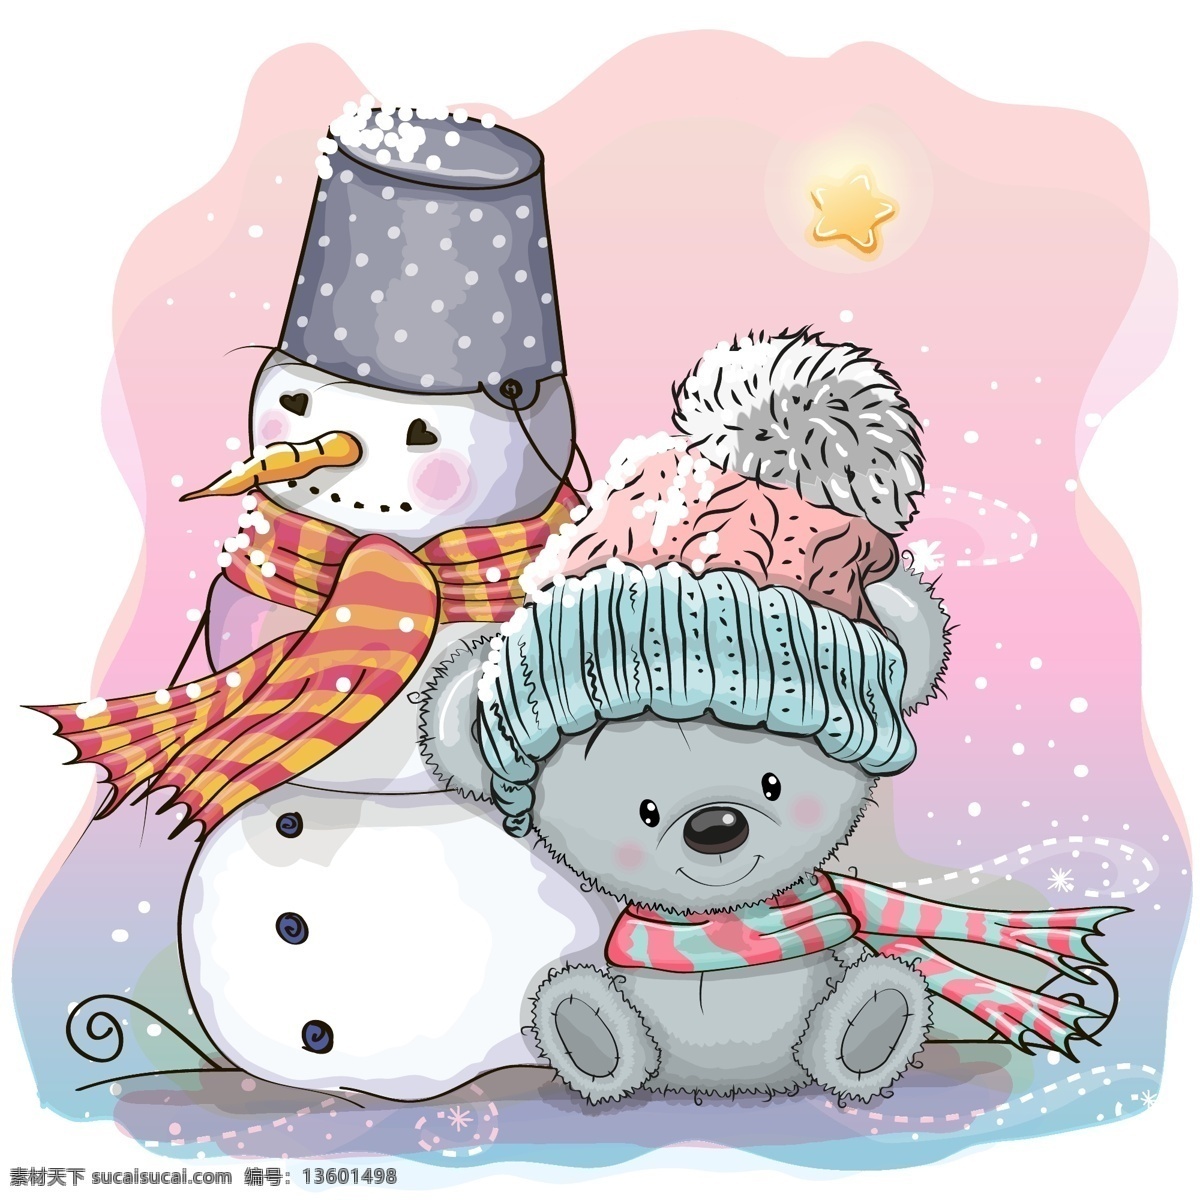 卡通冬季 雪人和熊 矢量素材 寒冷 卡通 冬季 雪人 熊 星星 雪花 围巾 帽子 矢量图 ai格式